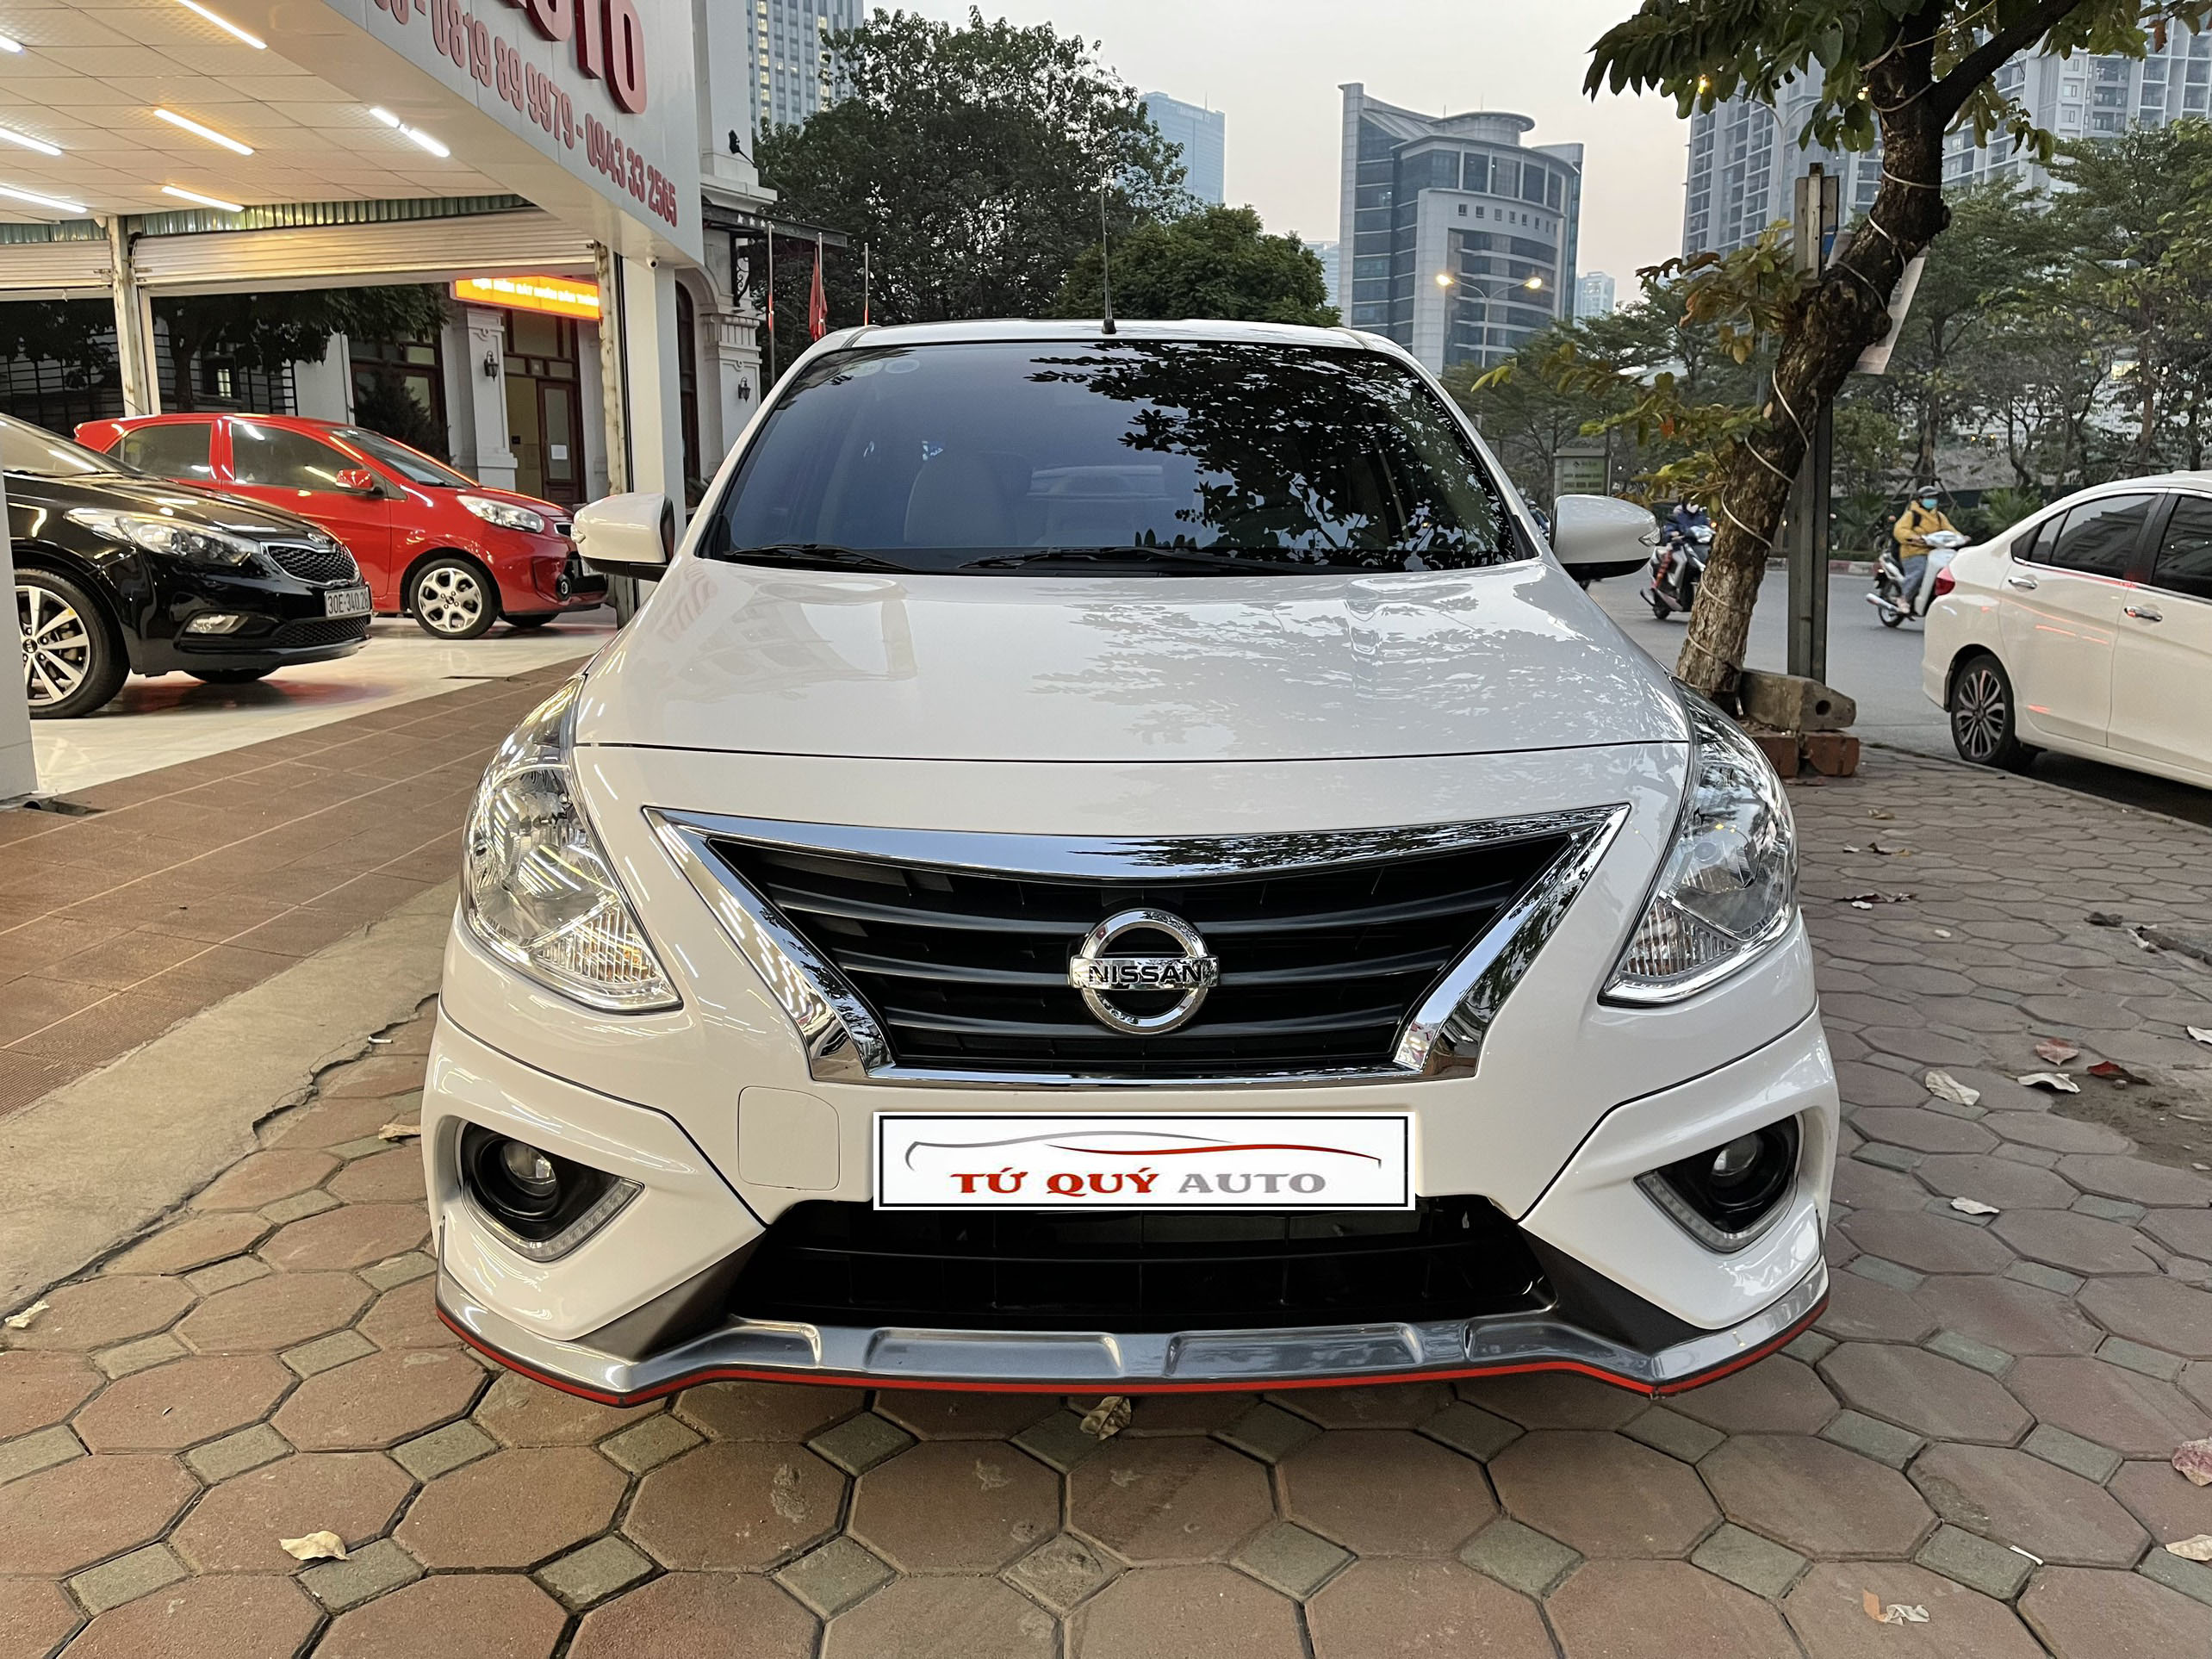 Nissan Sunny 2019 ra mắt tại thị trường Mỹ giá từ 12360 USD   doanhnhanplusvn